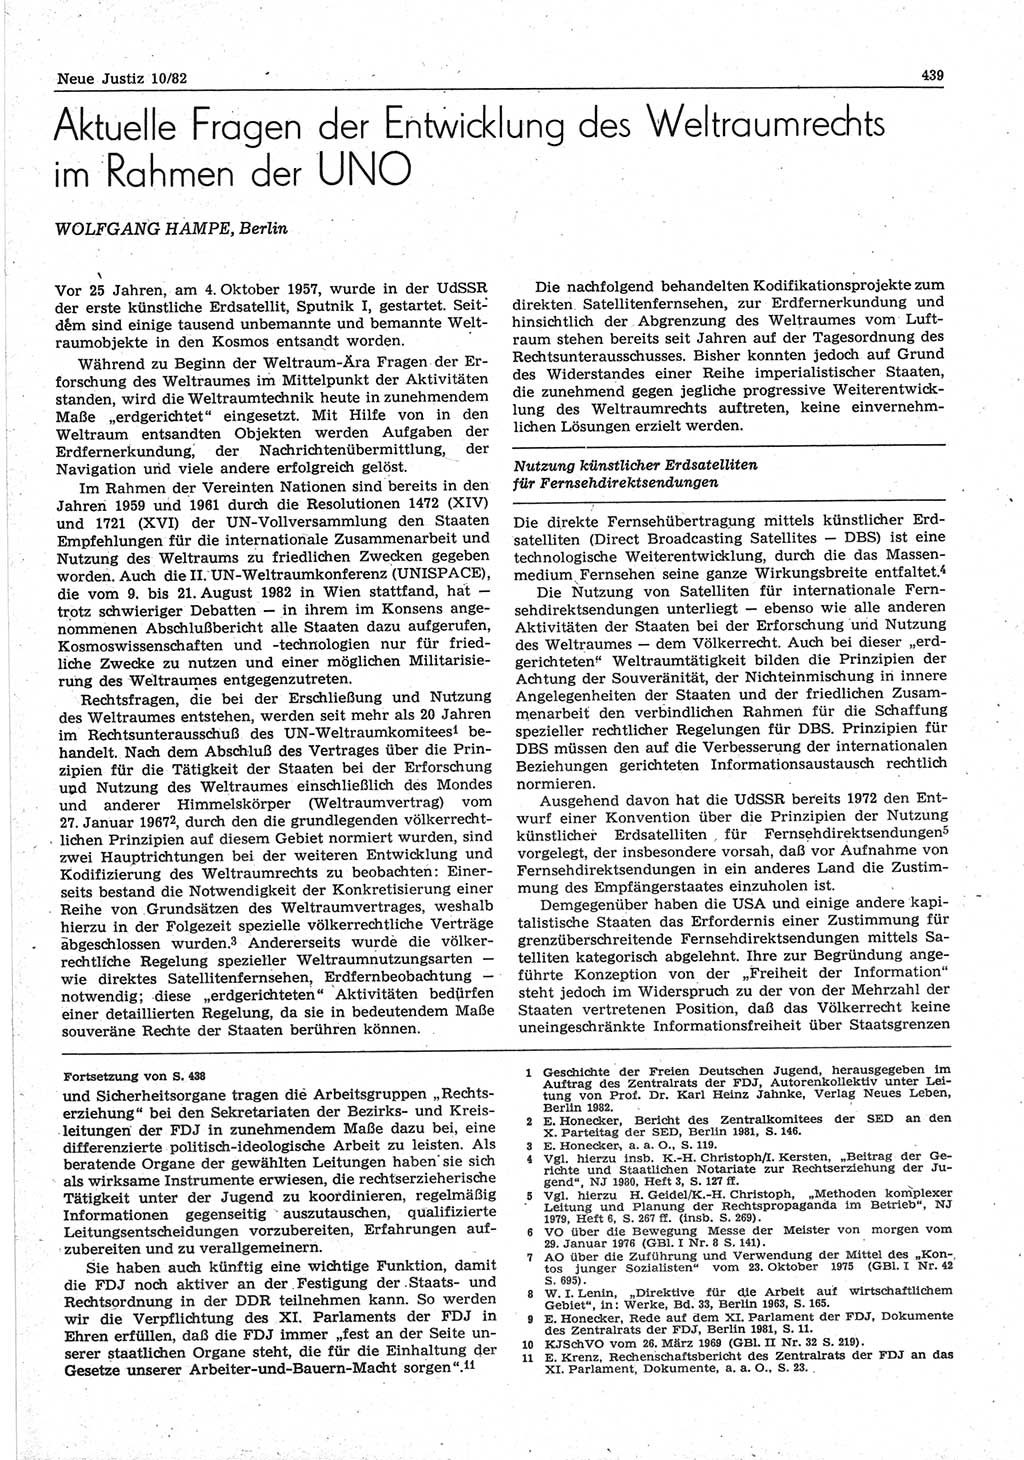 Neue Justiz (NJ), Zeitschrift für sozialistisches Recht und Gesetzlichkeit [Deutsche Demokratische Republik (DDR)], 36. Jahrgang 1982, Seite 439 (NJ DDR 1982, S. 439)